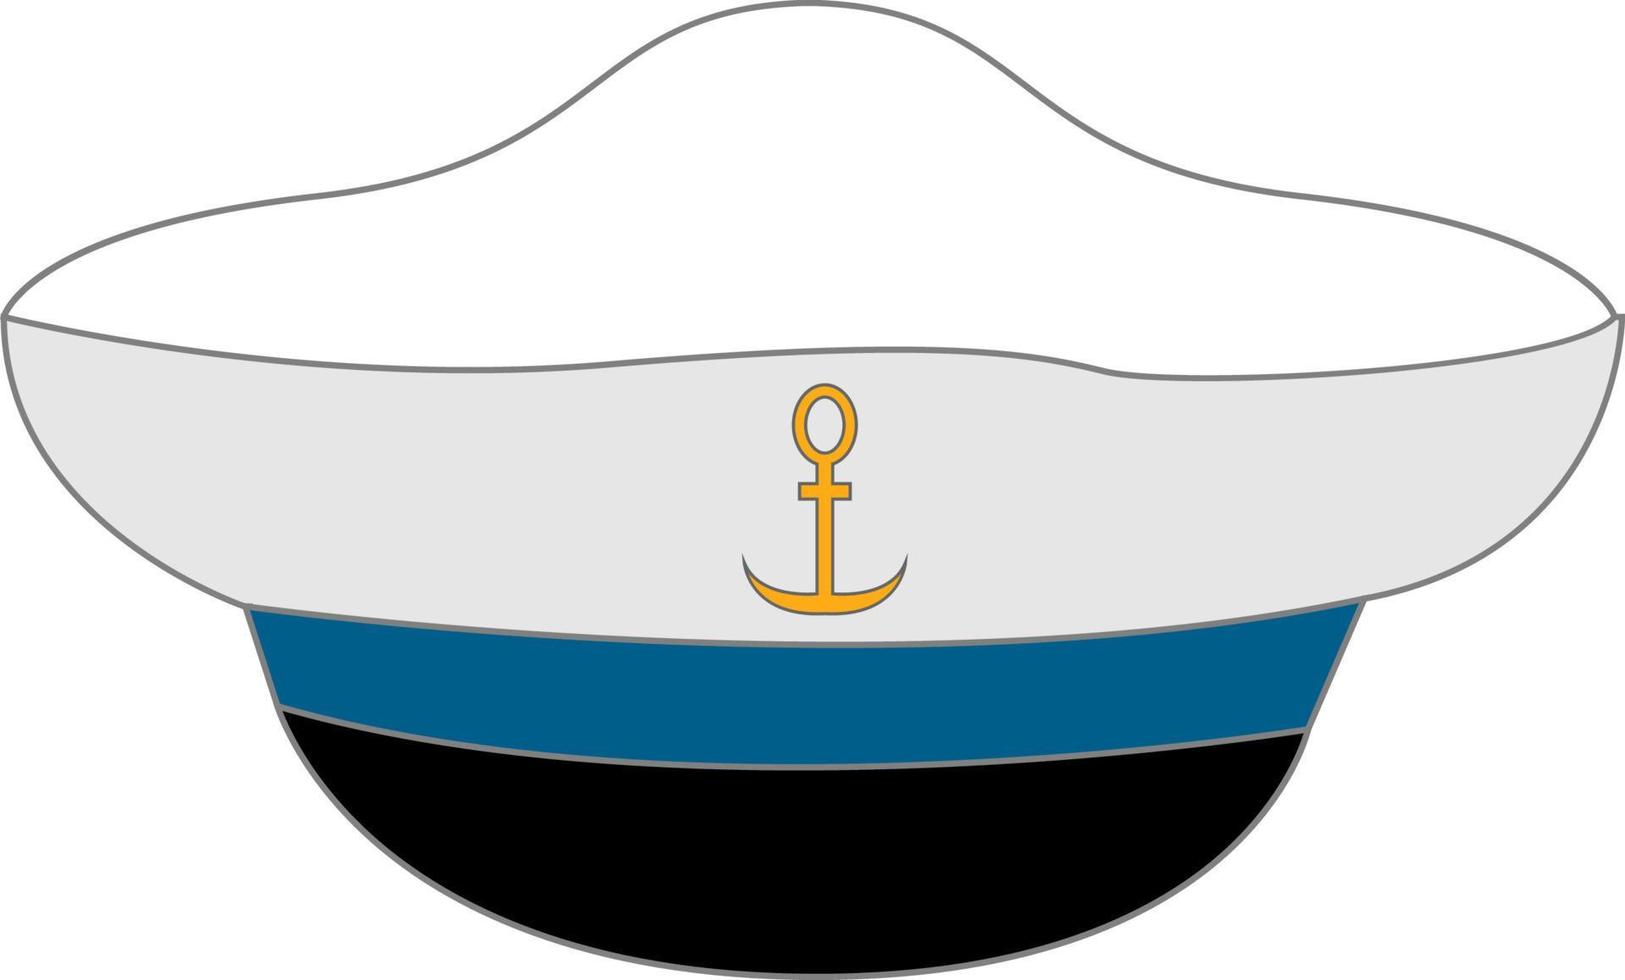 White sailor hat, illustration, vector on white background.